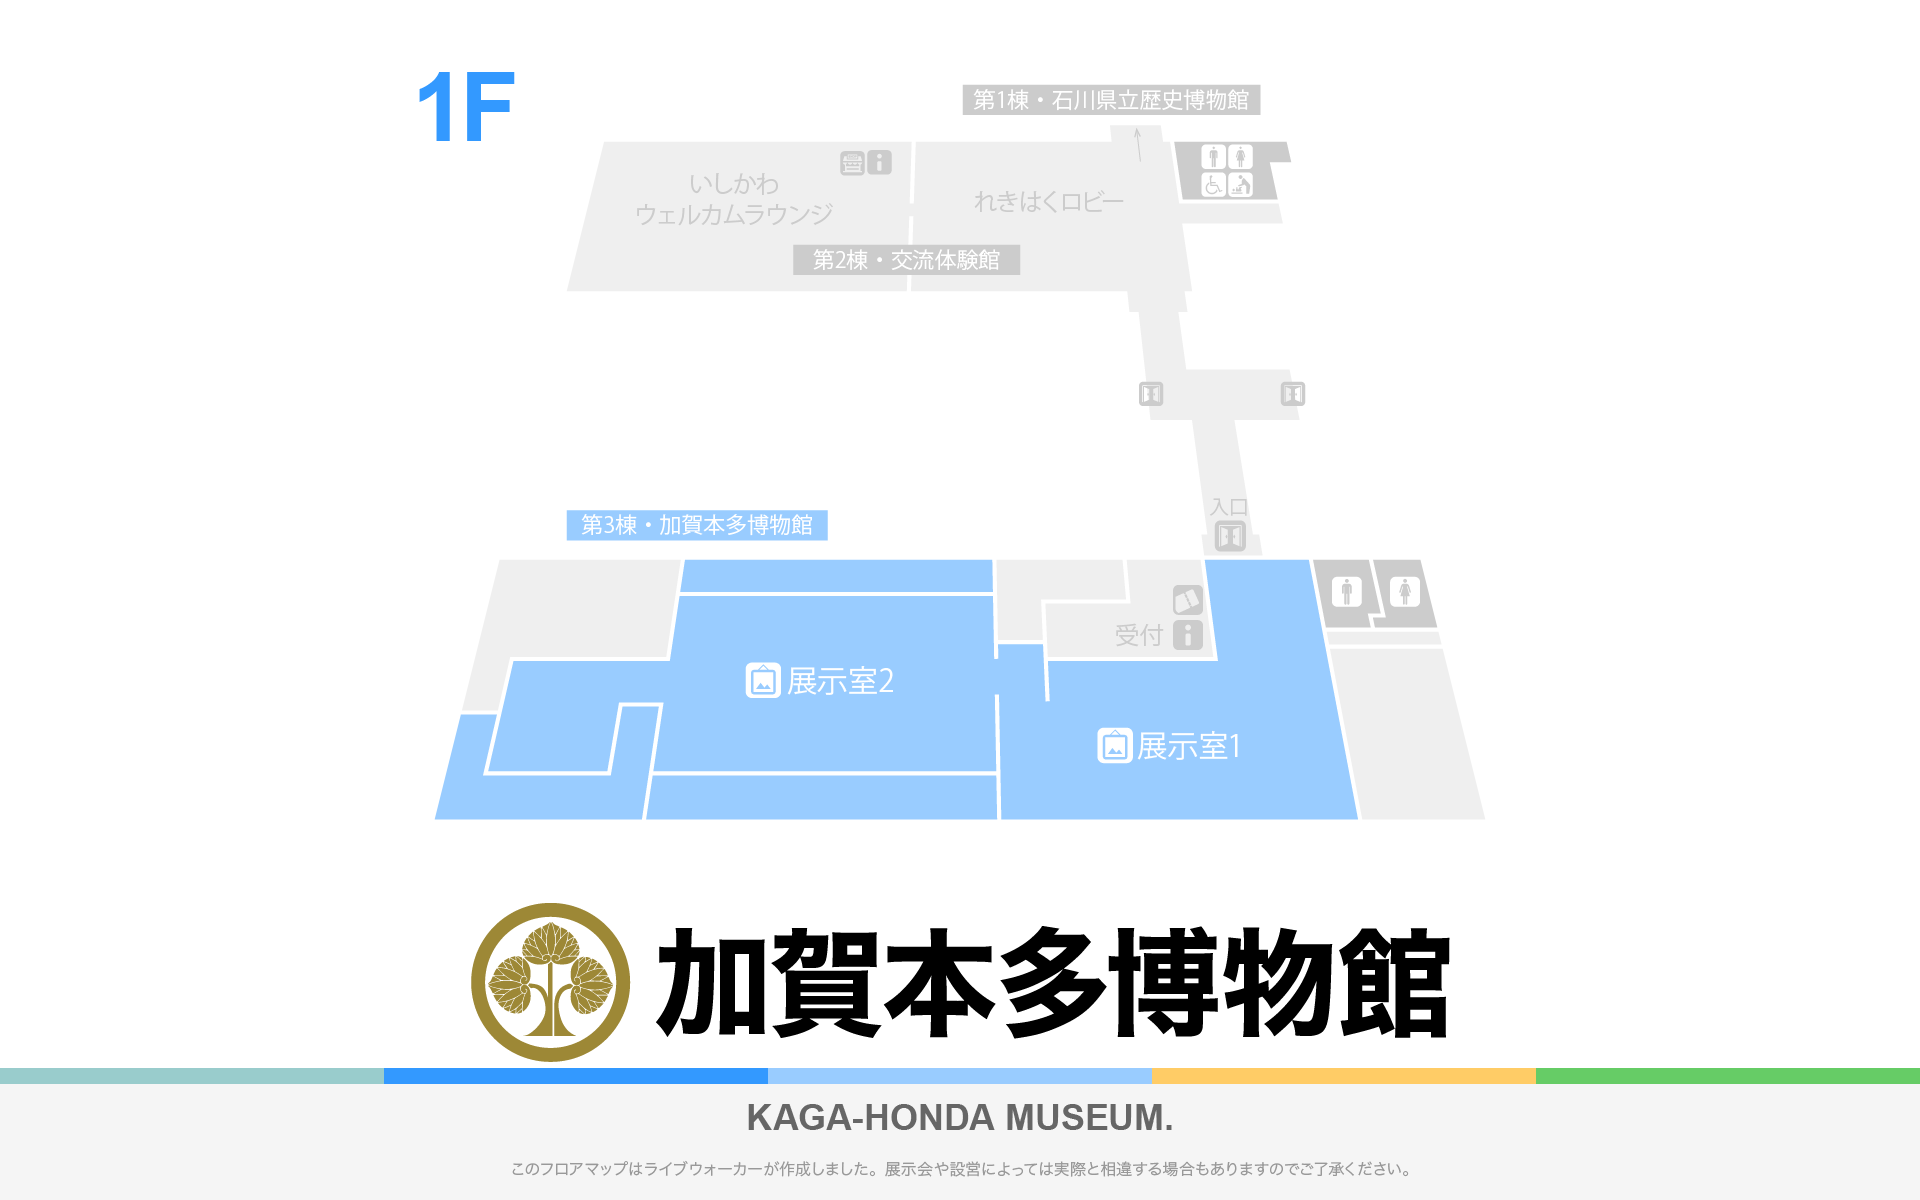 加賀本多博物館のフロアマップ・ミュージアム